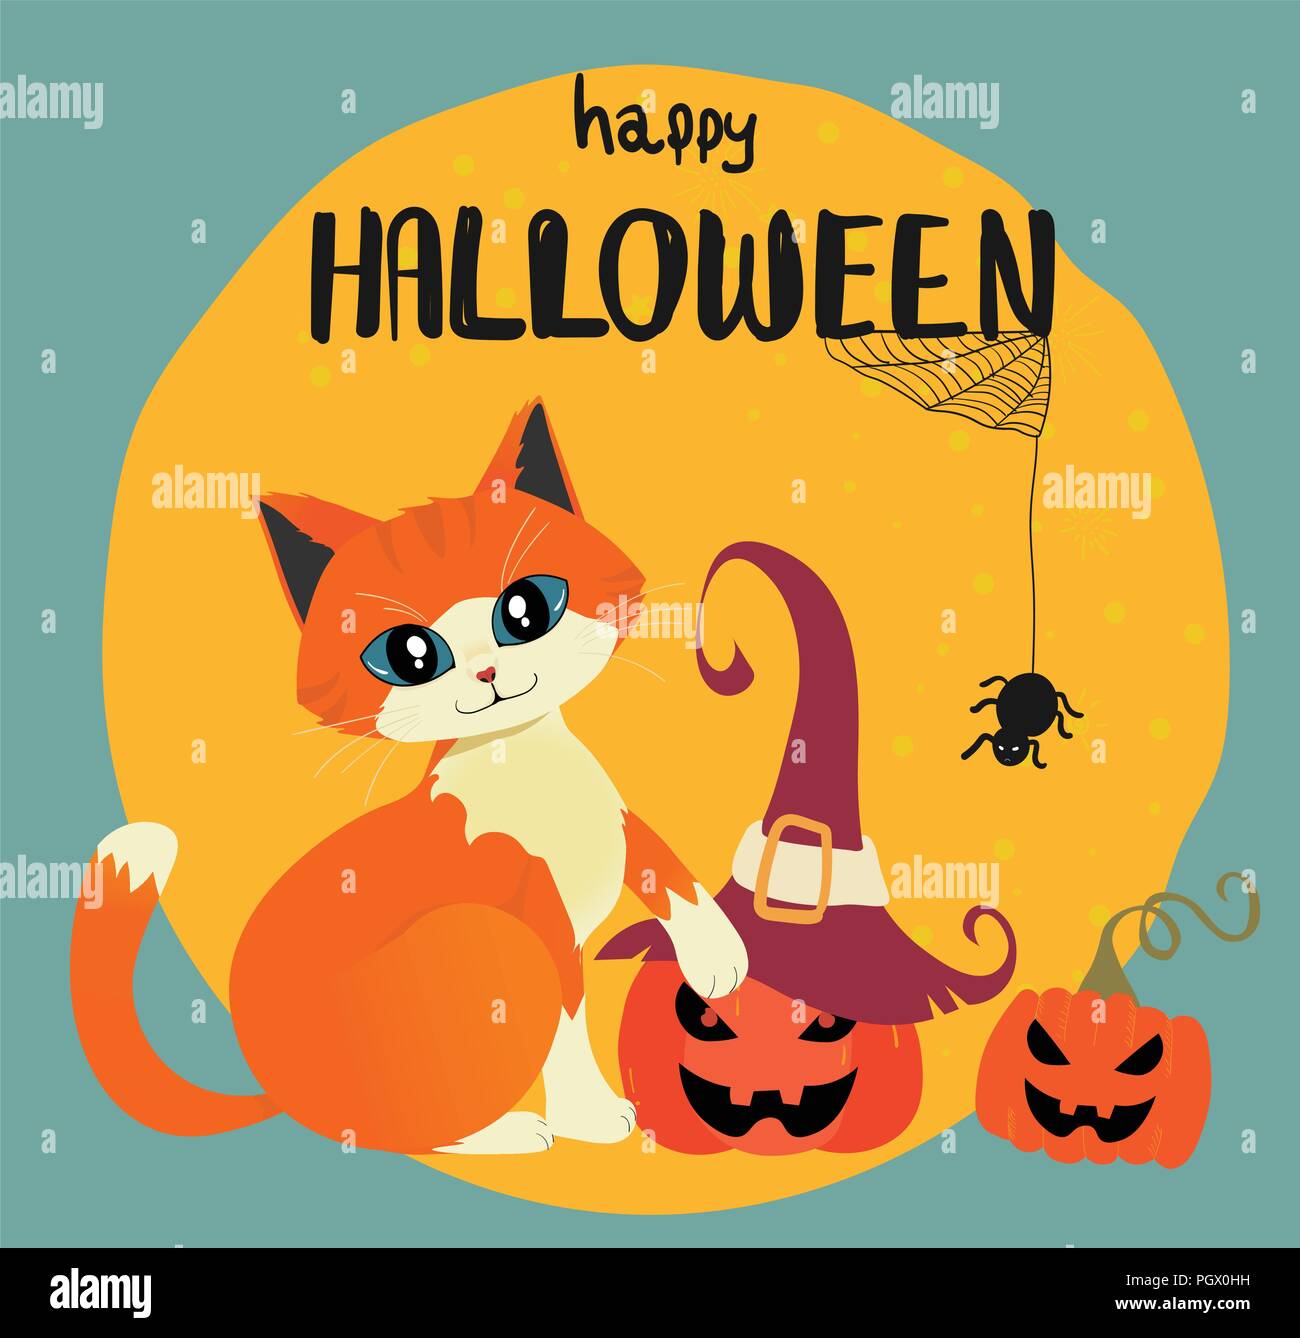 Feliz Halloween tarjeta naranja dibujada a mano con gato y calabaza contra la luna llena Ilustración del Vector